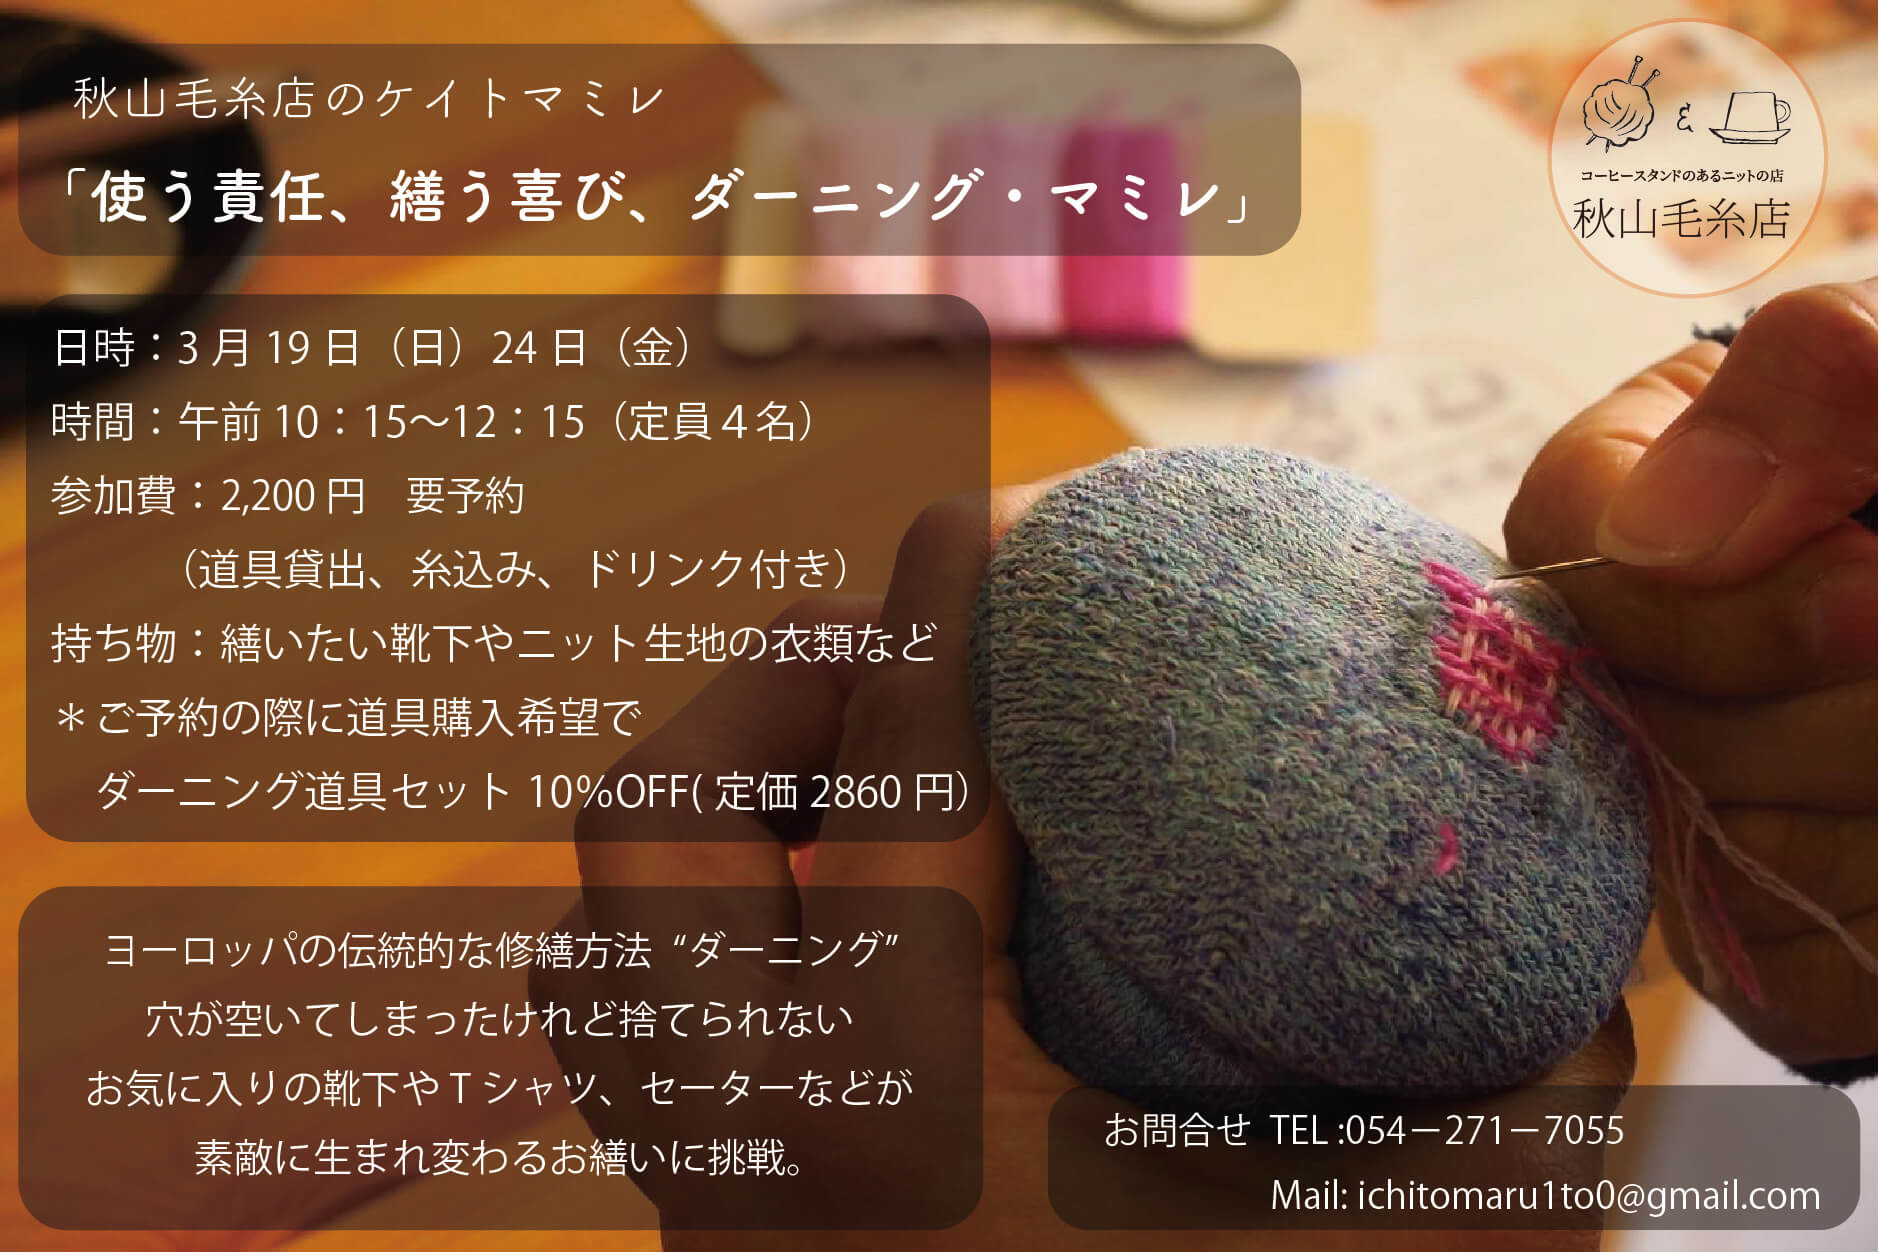 【イベント終了】「使う責任、繕う喜び、ダーニング・マミレ」3月秋山毛糸店ケイトマミレ２